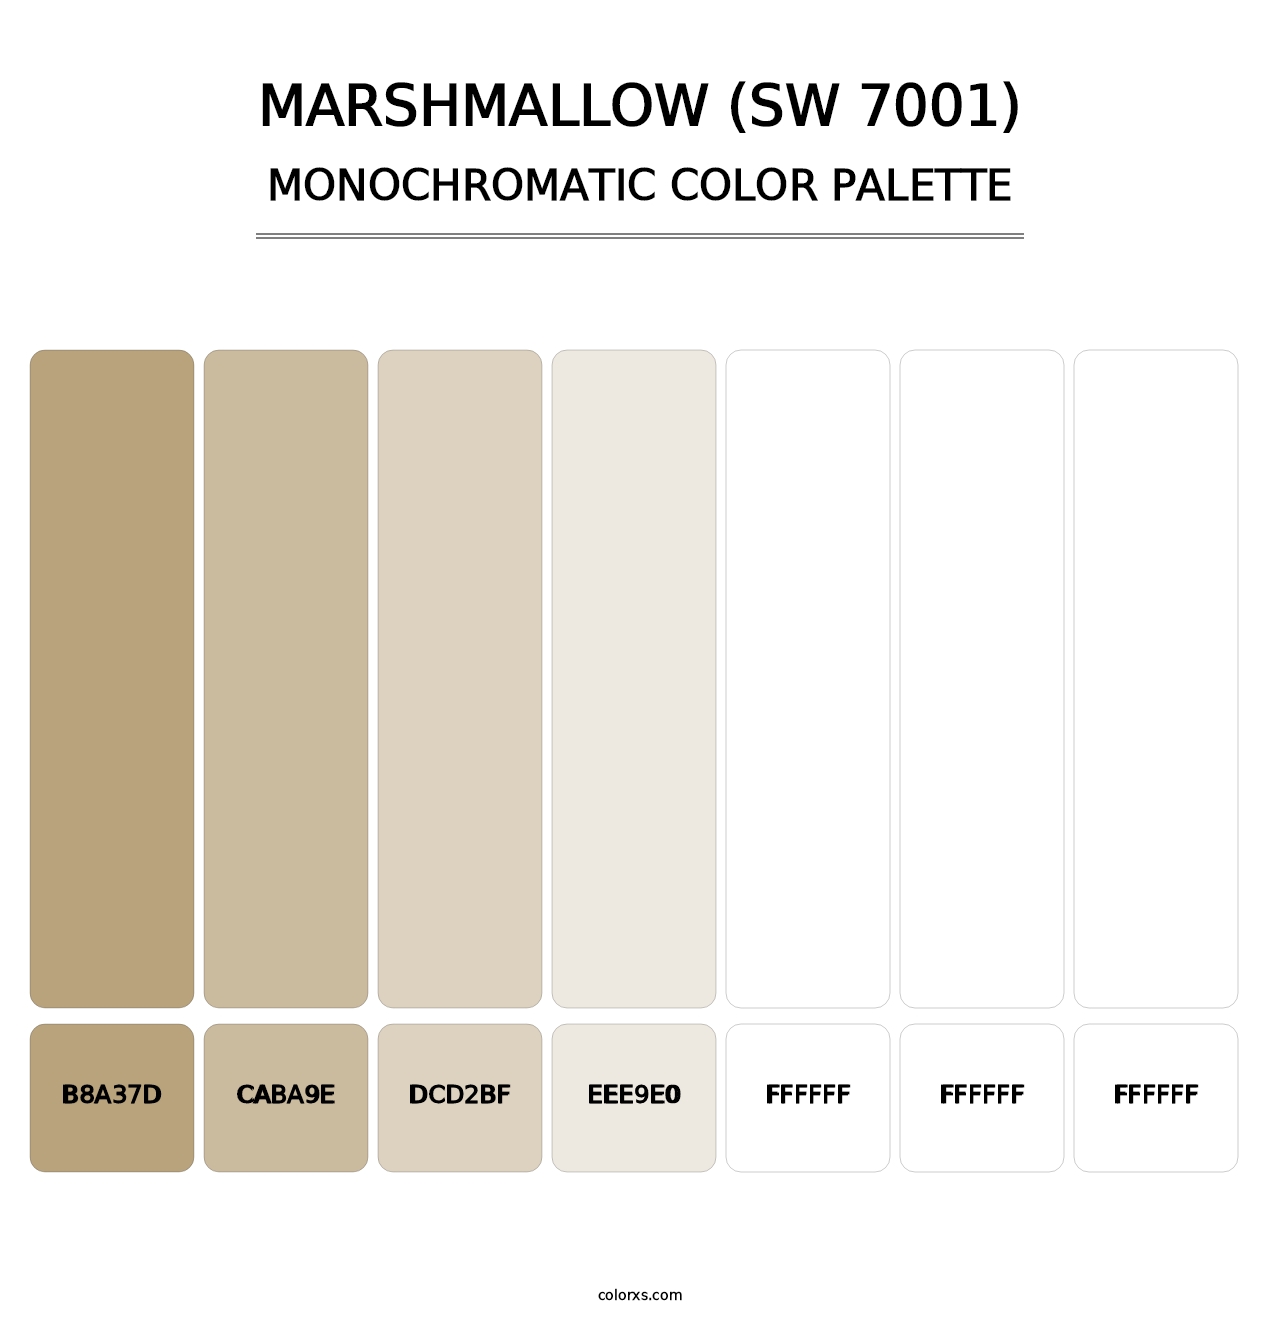 Marshmallow (SW 7001) - Monochromatic Color Palette